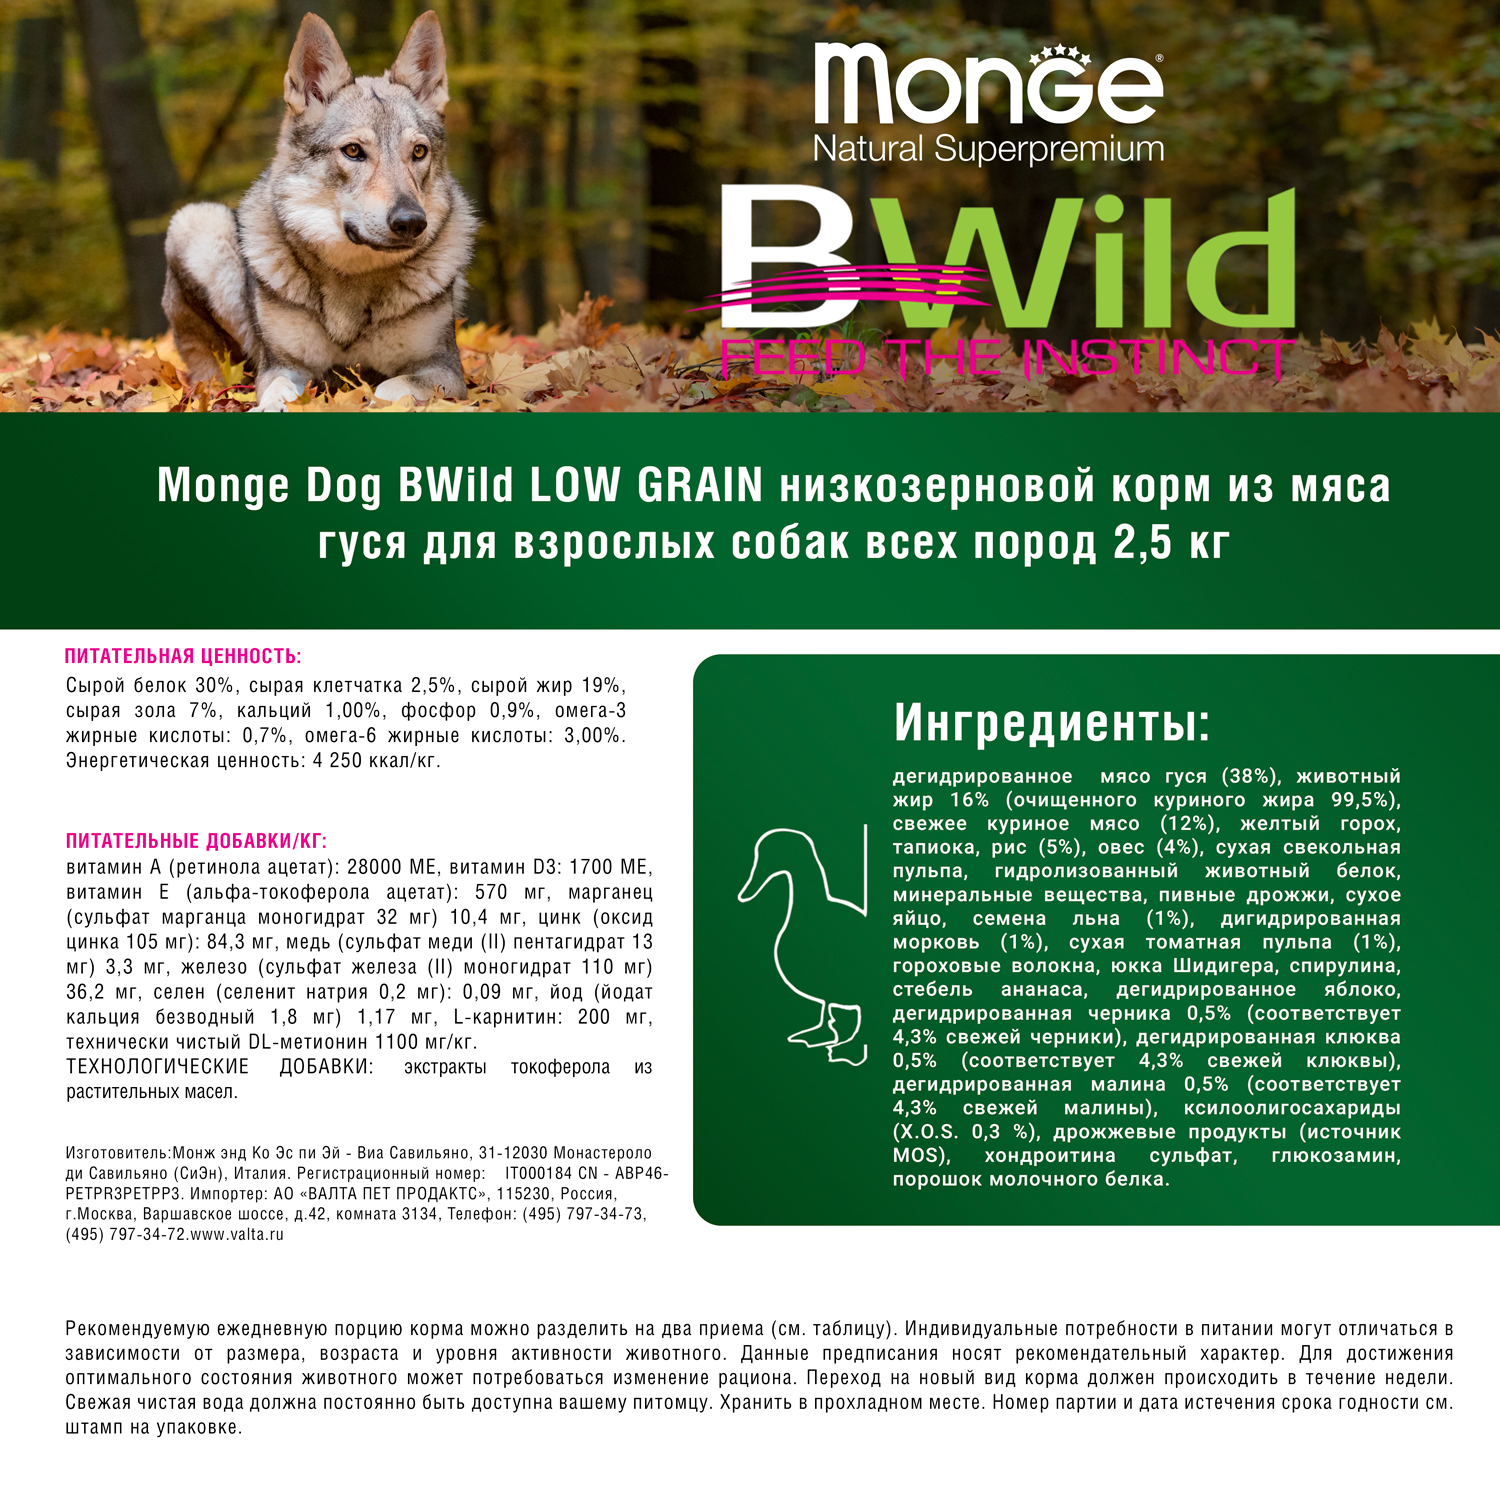 Сухой корм Monge Dog BWild LOW GRAIN для взрослых собак, низкозерновой, из мяса гуся 2,5 кг